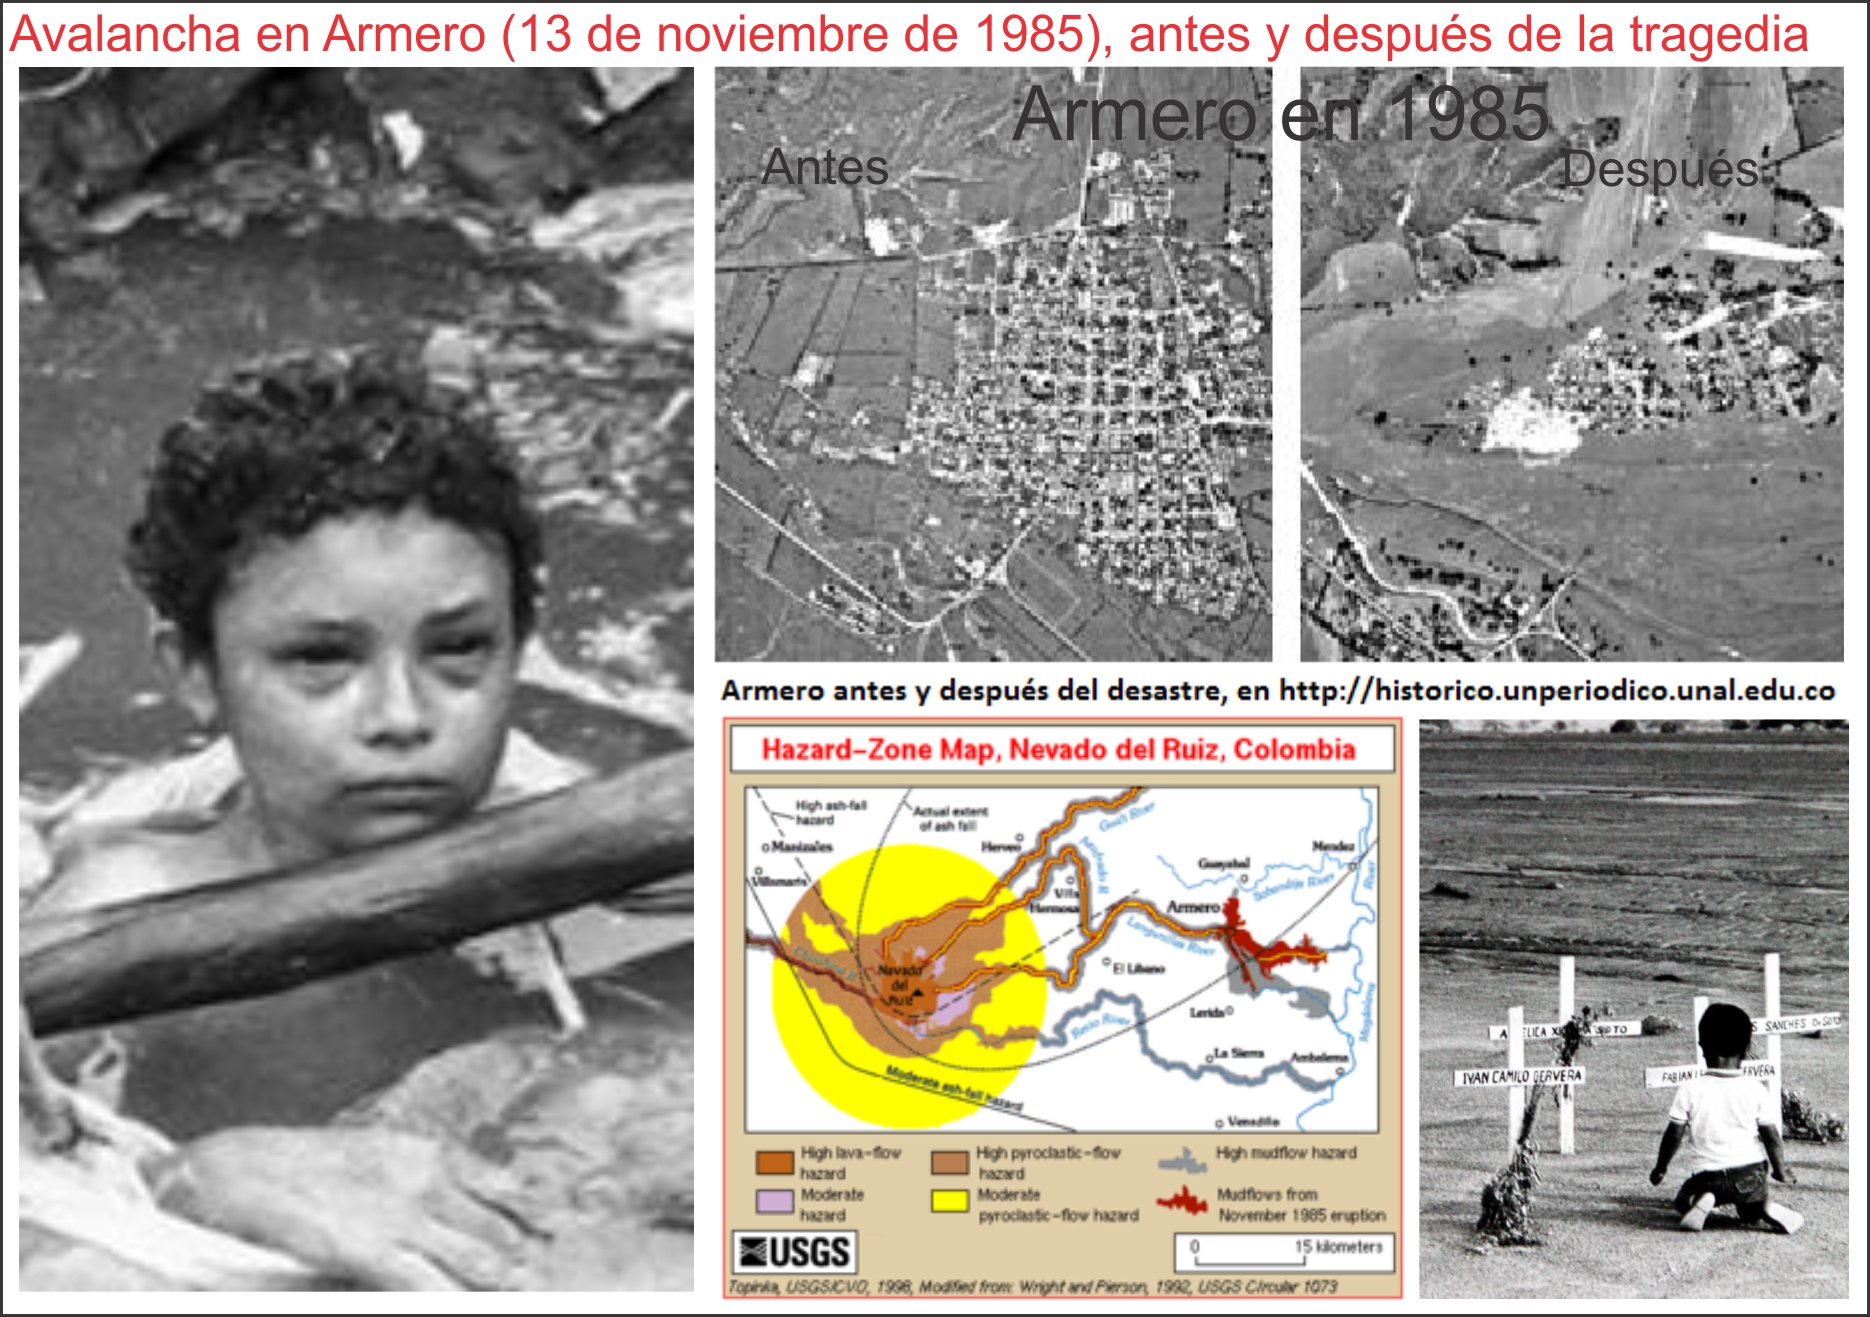  13 de noviembre de 1985: la avalancha de armero que sepultó 23 mil pobladores